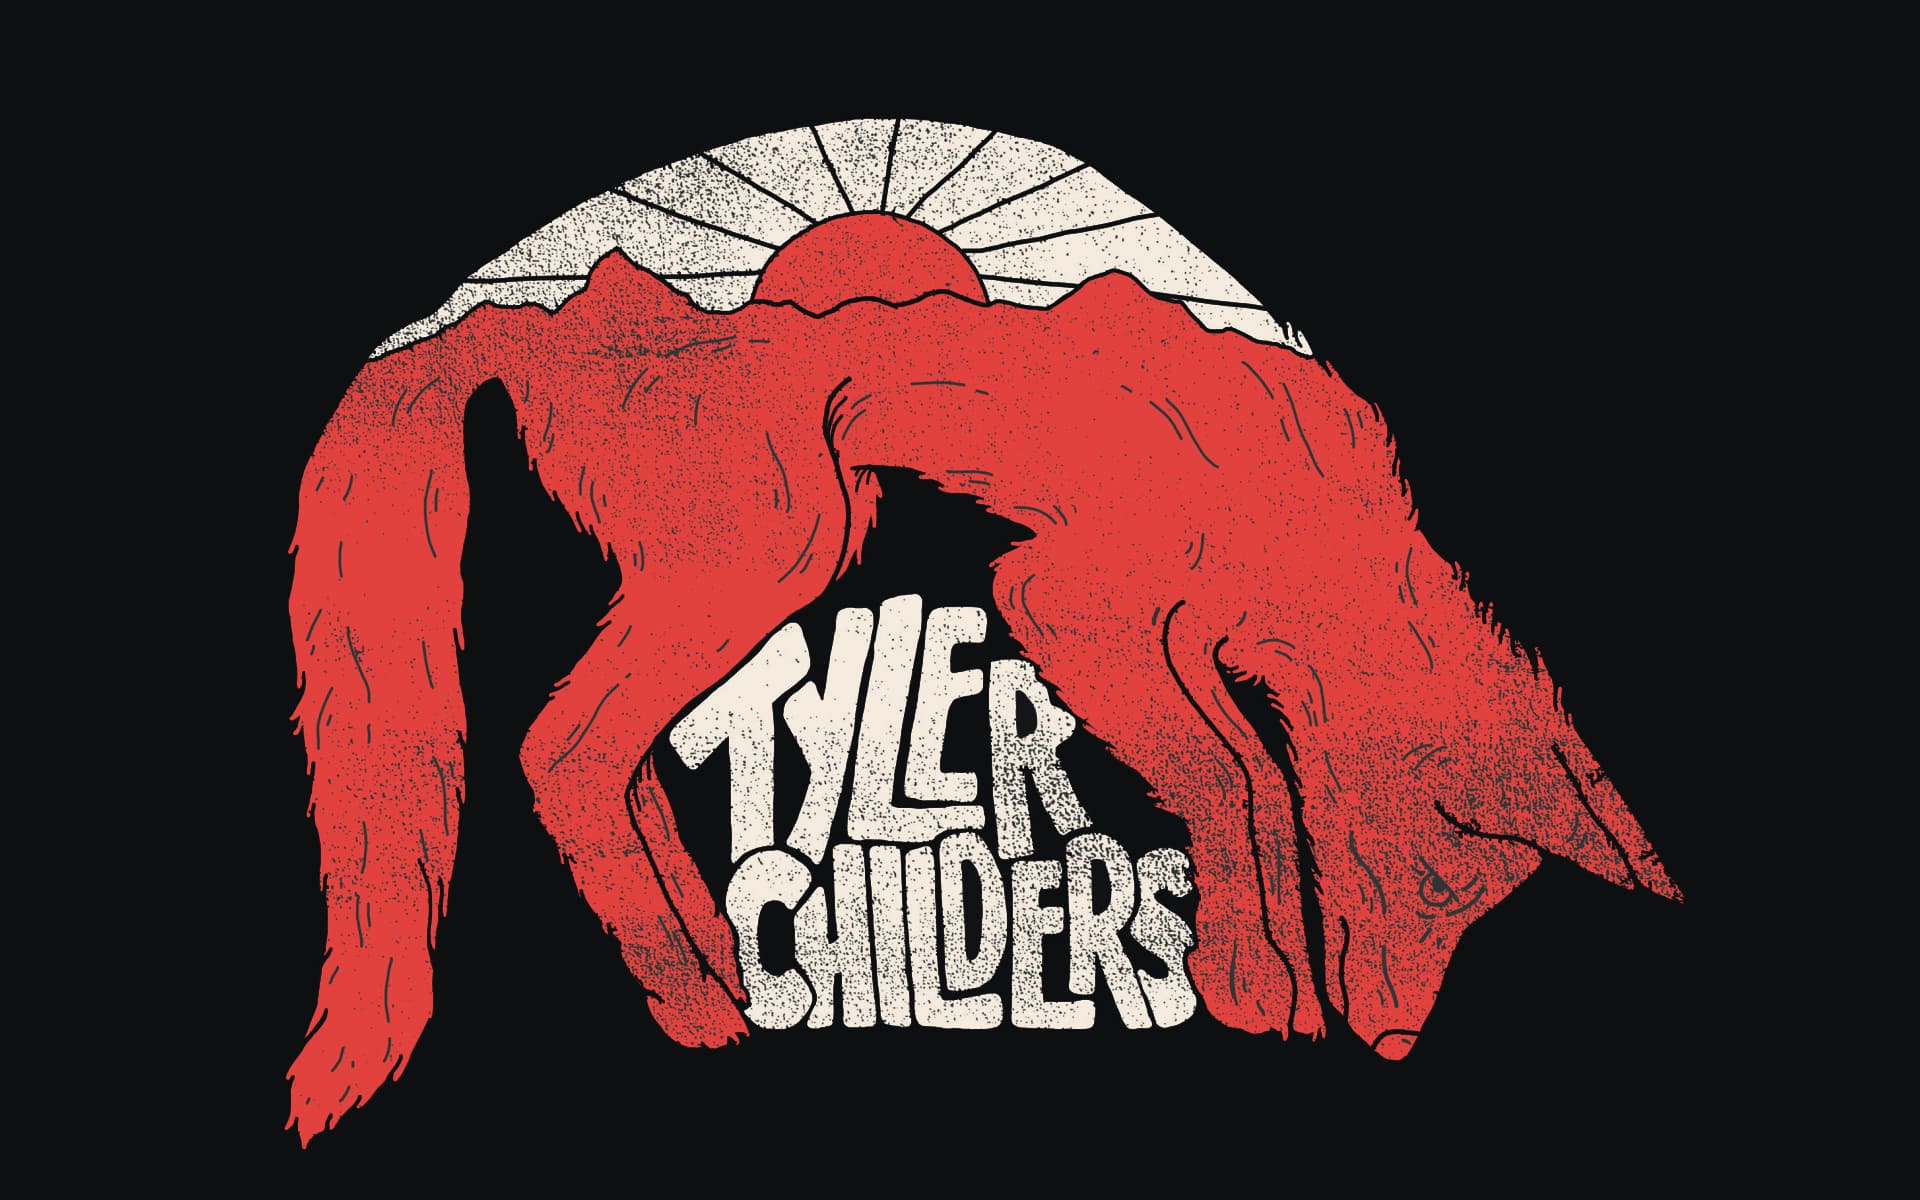 Tyler Childers Wallpapers